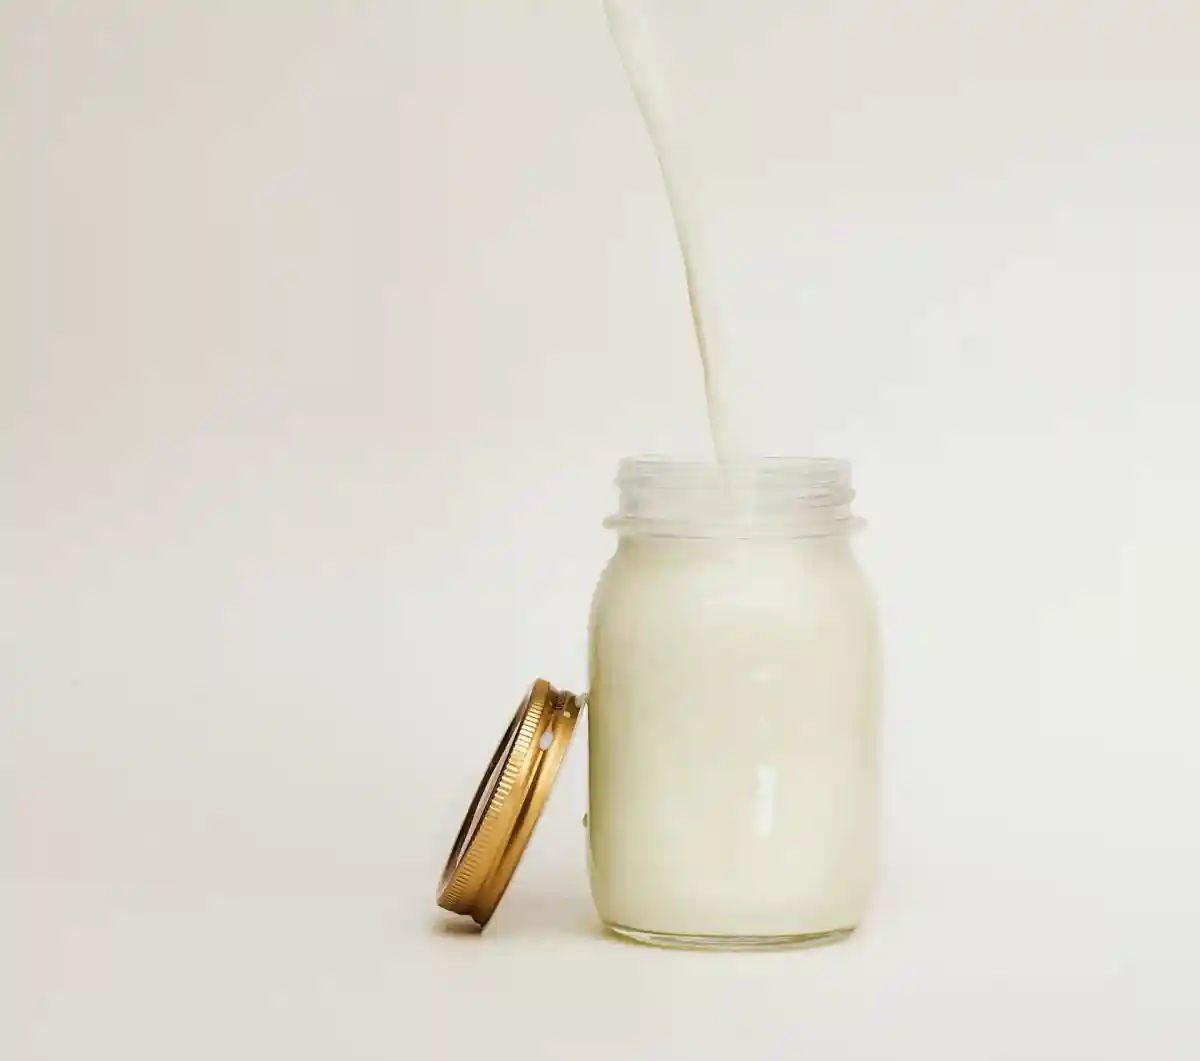 Из немецких магазинов исчезнут молочные продукты Onken. Фото: Nikolai Chernichenko/Unsplash.com